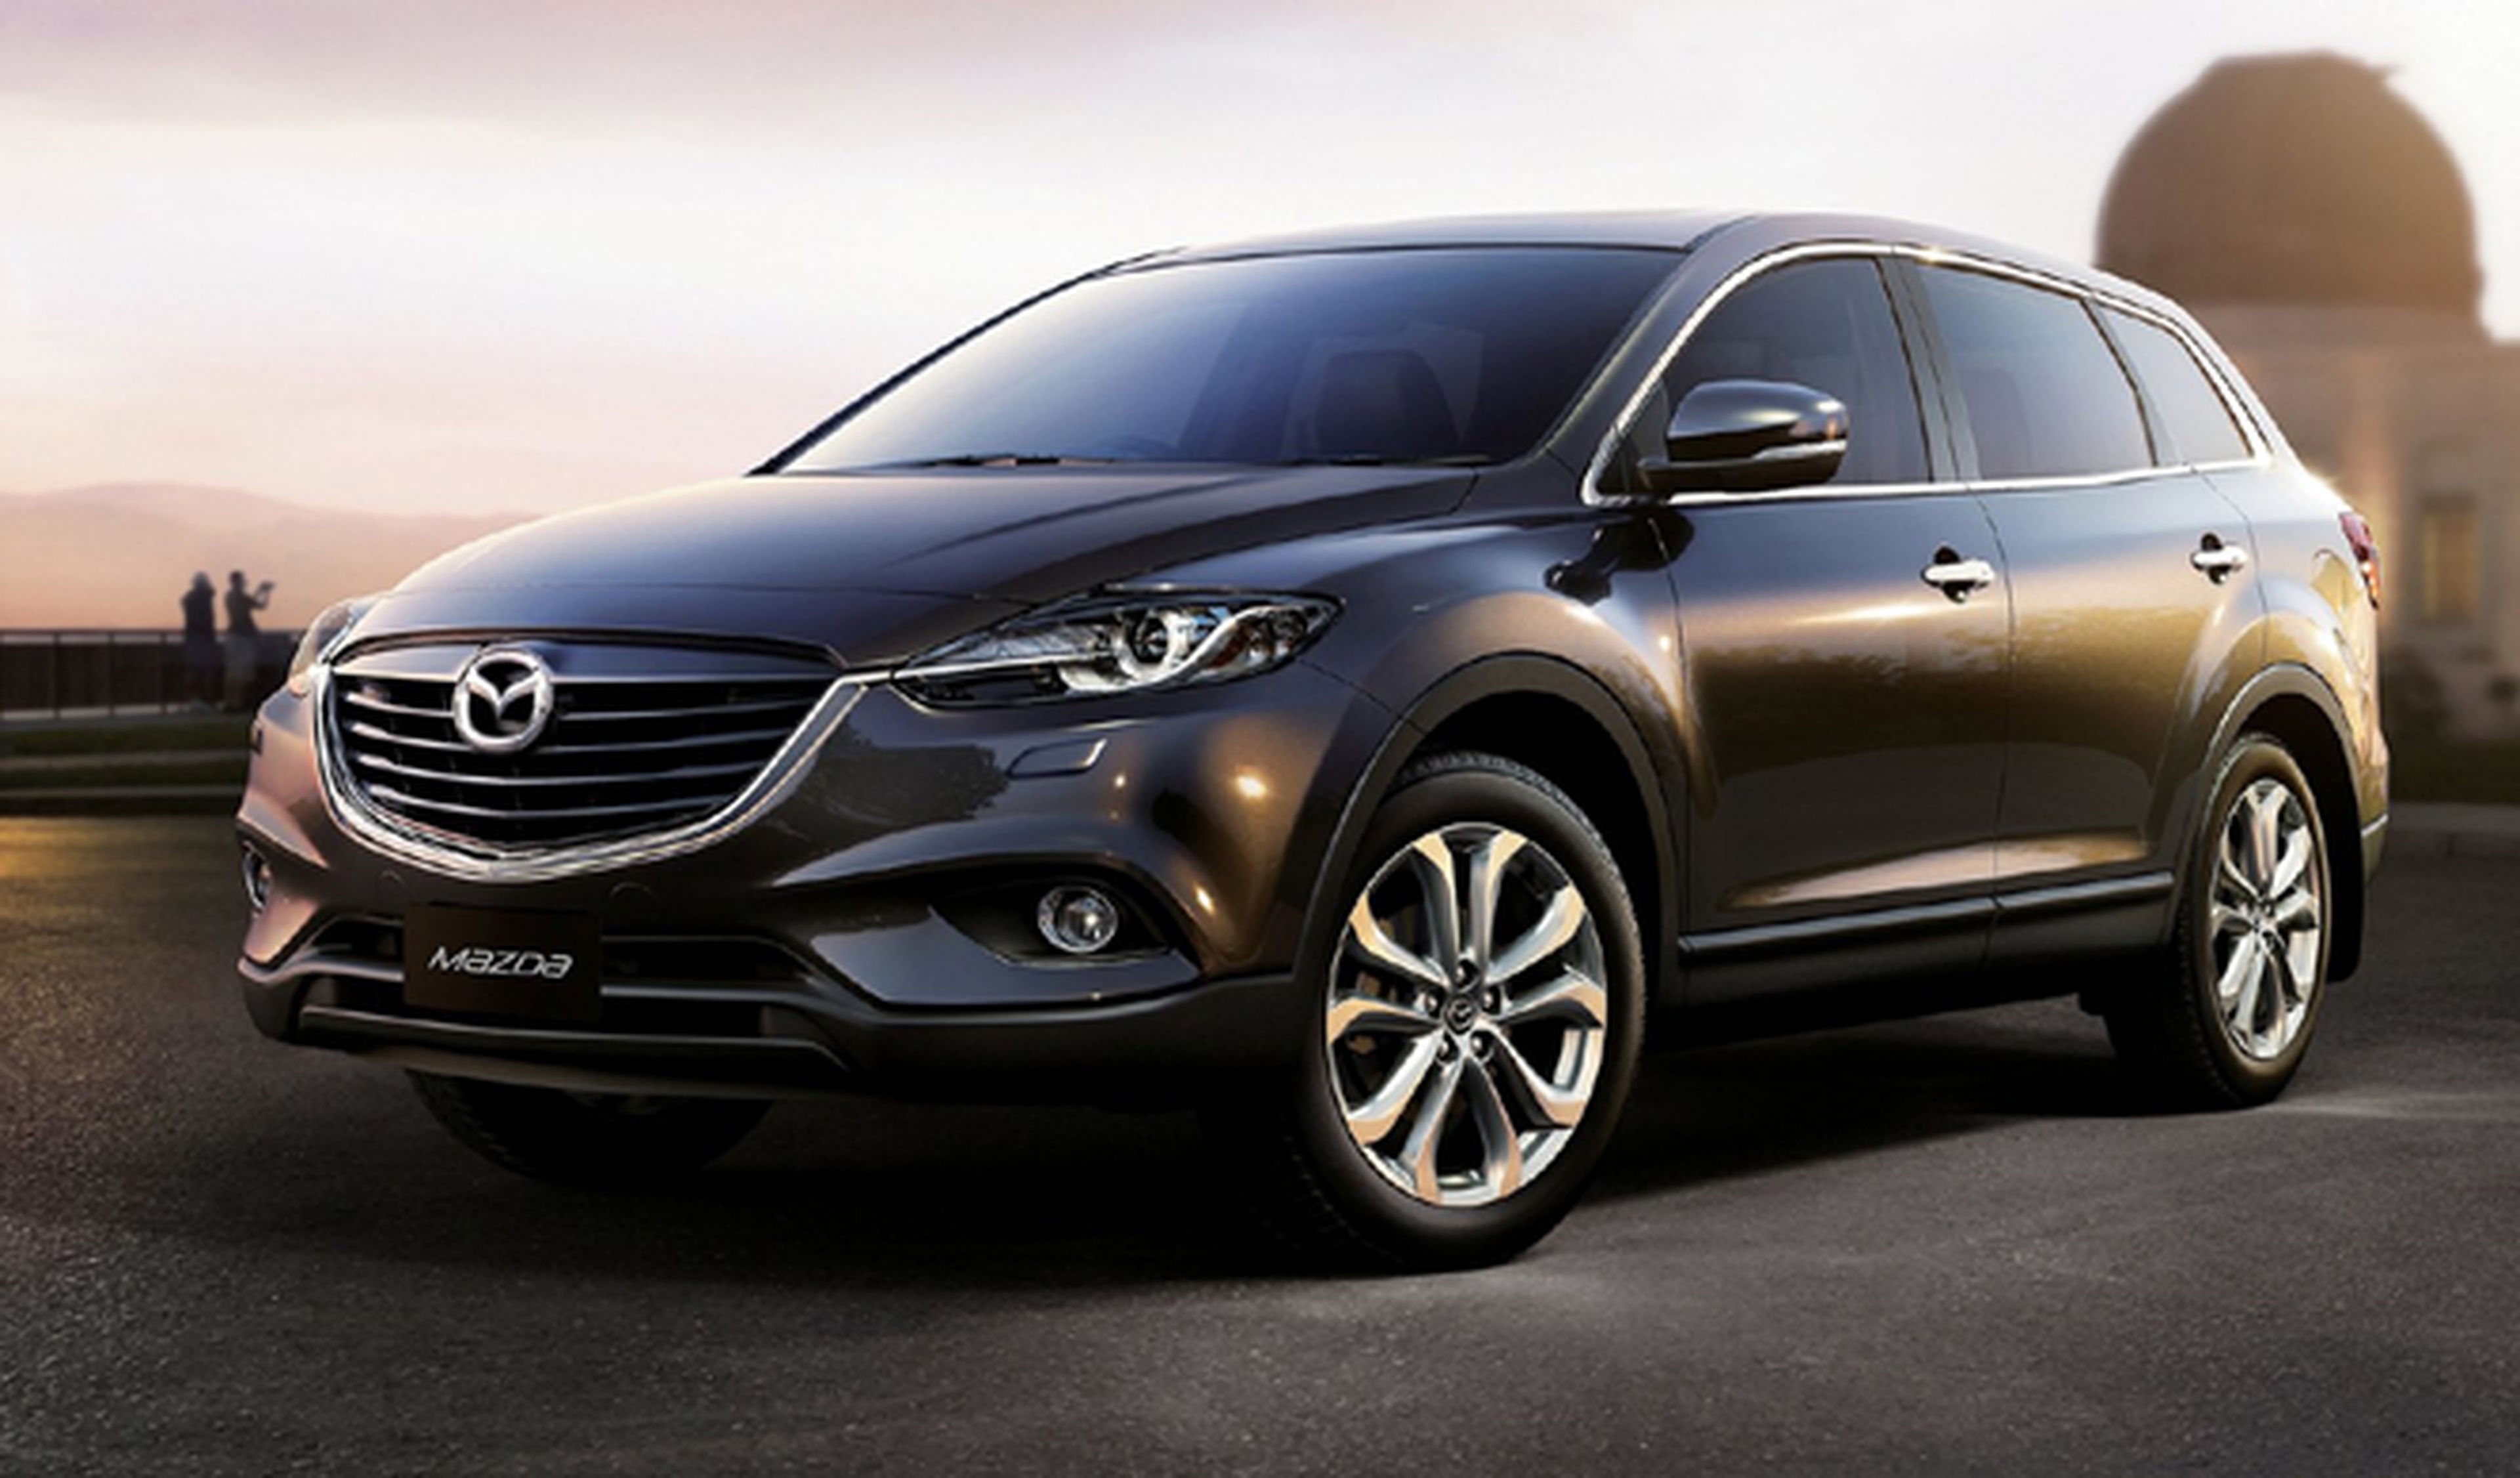 Mazda CX-9 2015, sólo 100 unidades a la venta en España